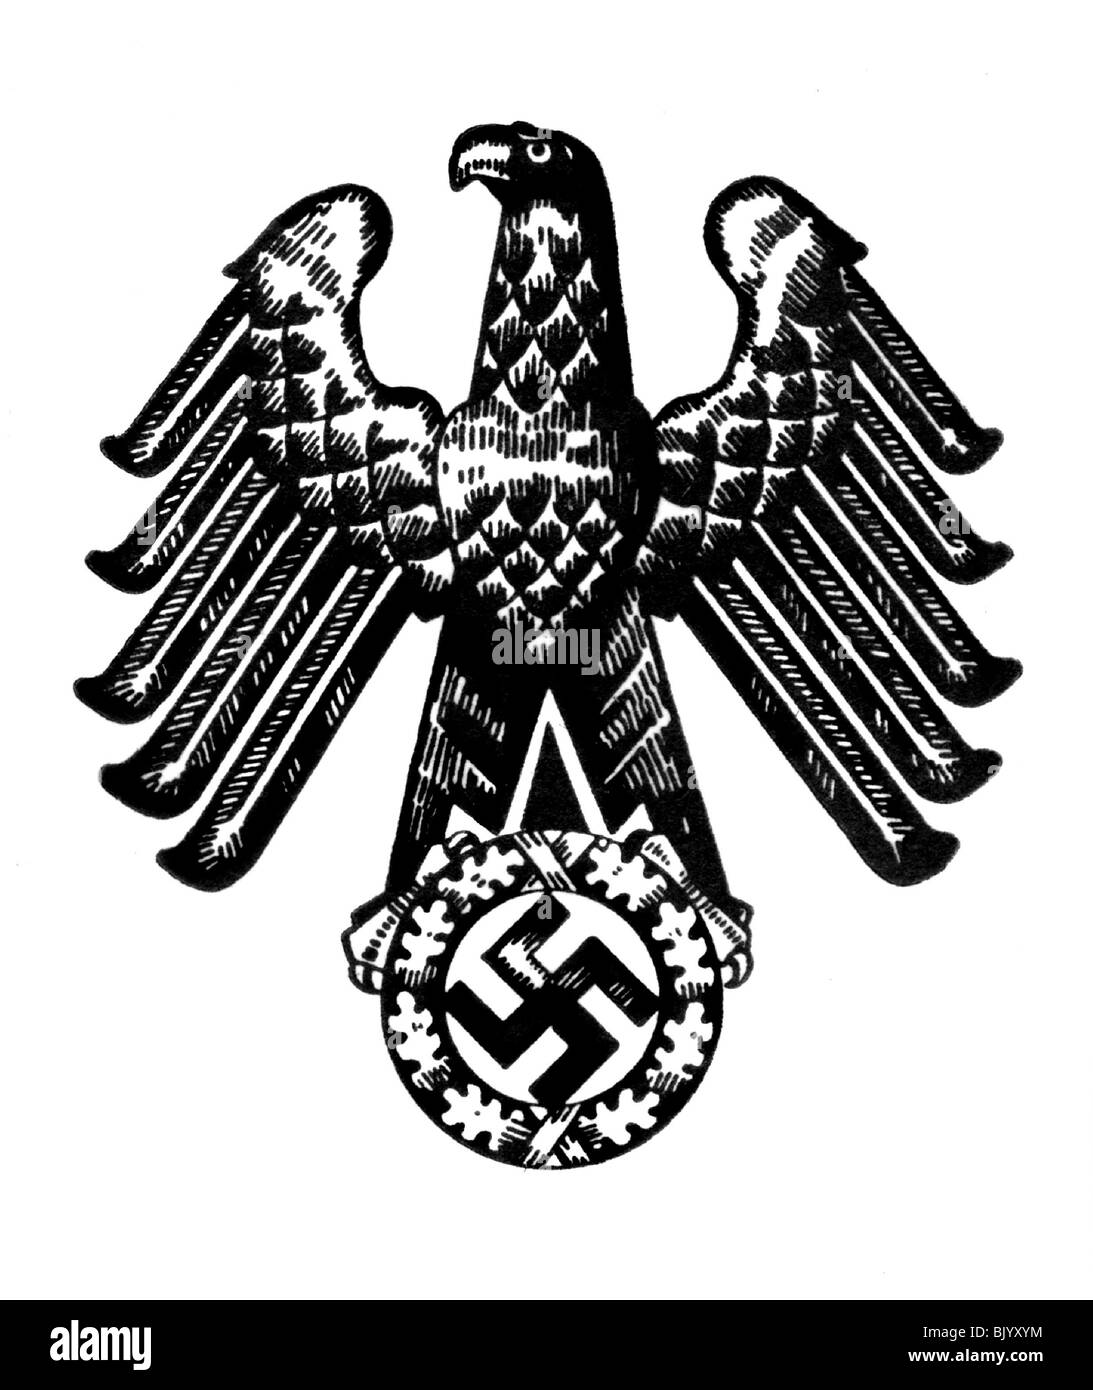 Aigle allemand Banque d'images noir et blanc - Alamy